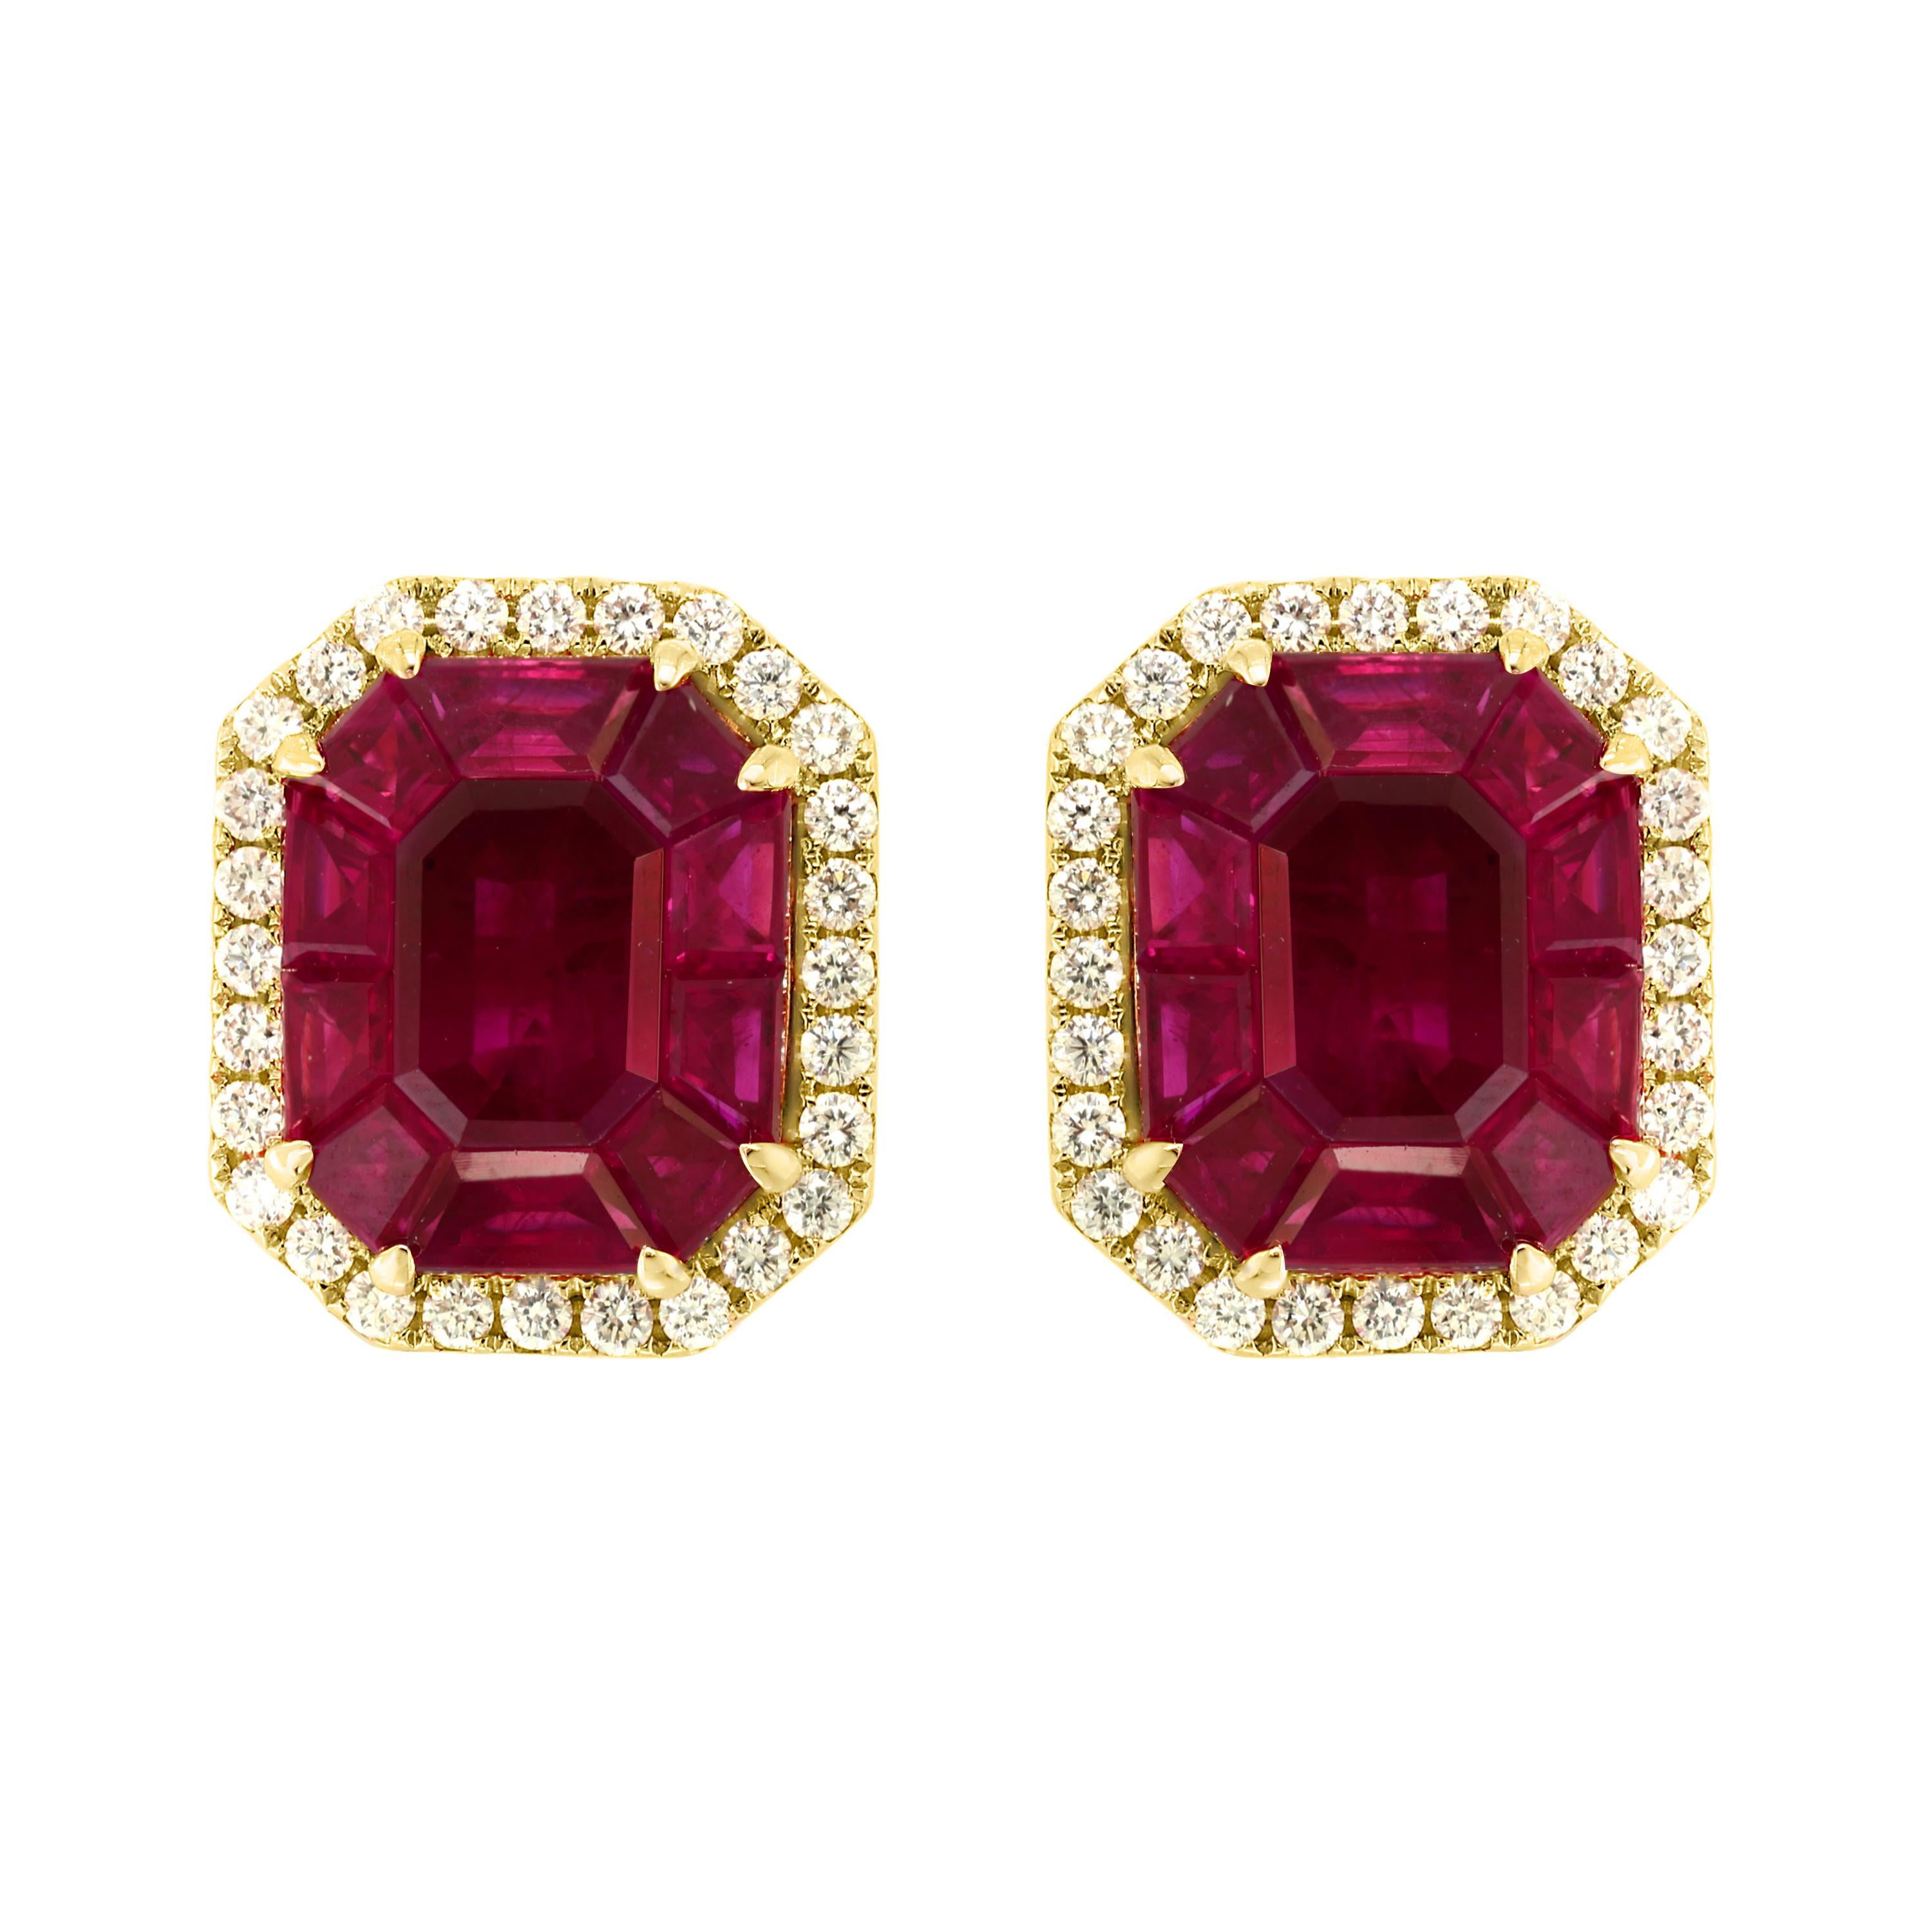 Boucles d'oreilles en or jaune 18 carats avec diamants et rubis naturel de Birmanie de 12 carats